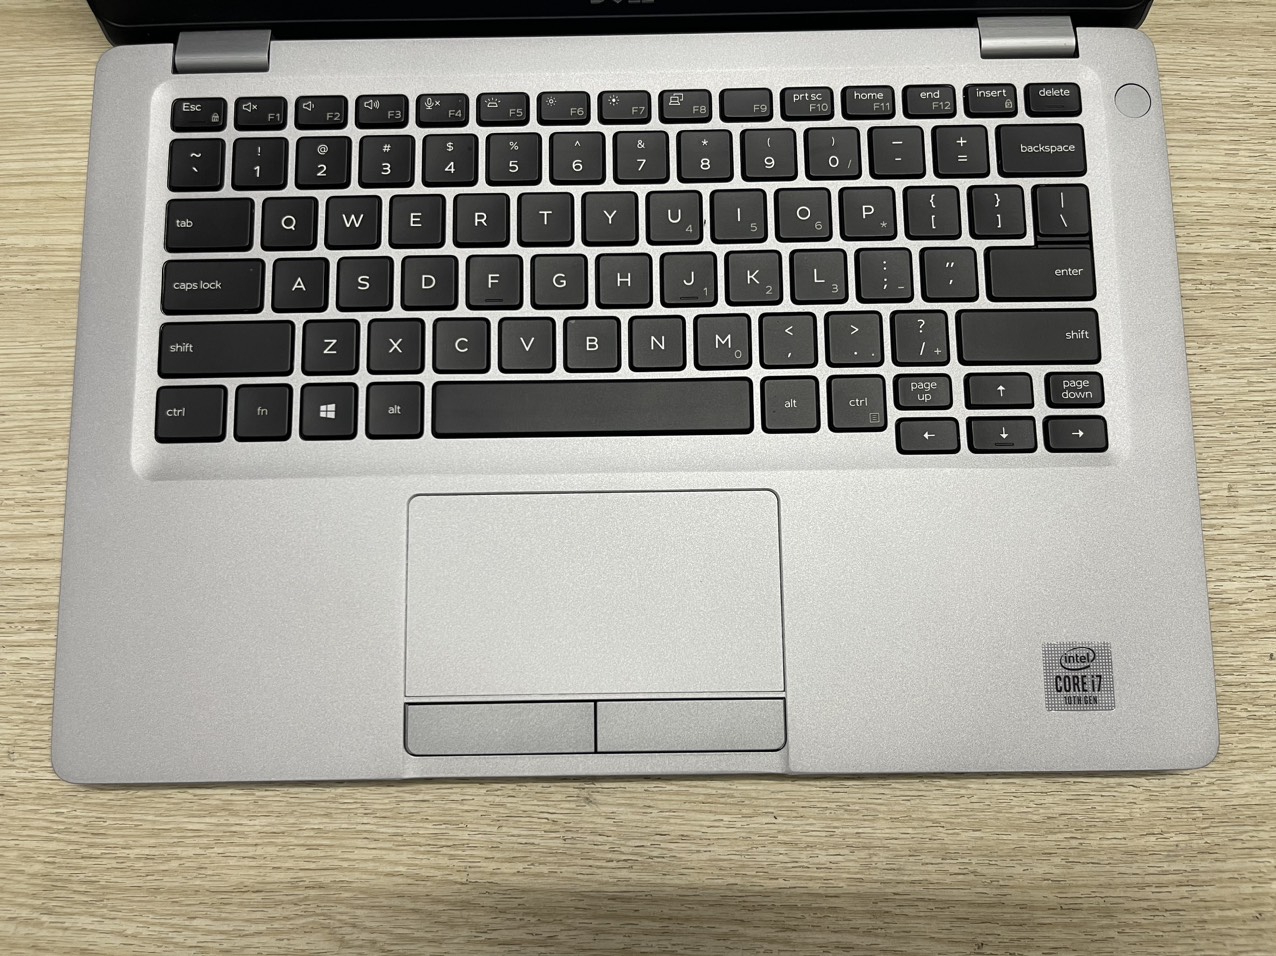 Laptop Dell chính hãng giá rẻ tại Lê Nguyễn PC, cấu hình i5, i7, laptop đồ họa - Ảnh chính